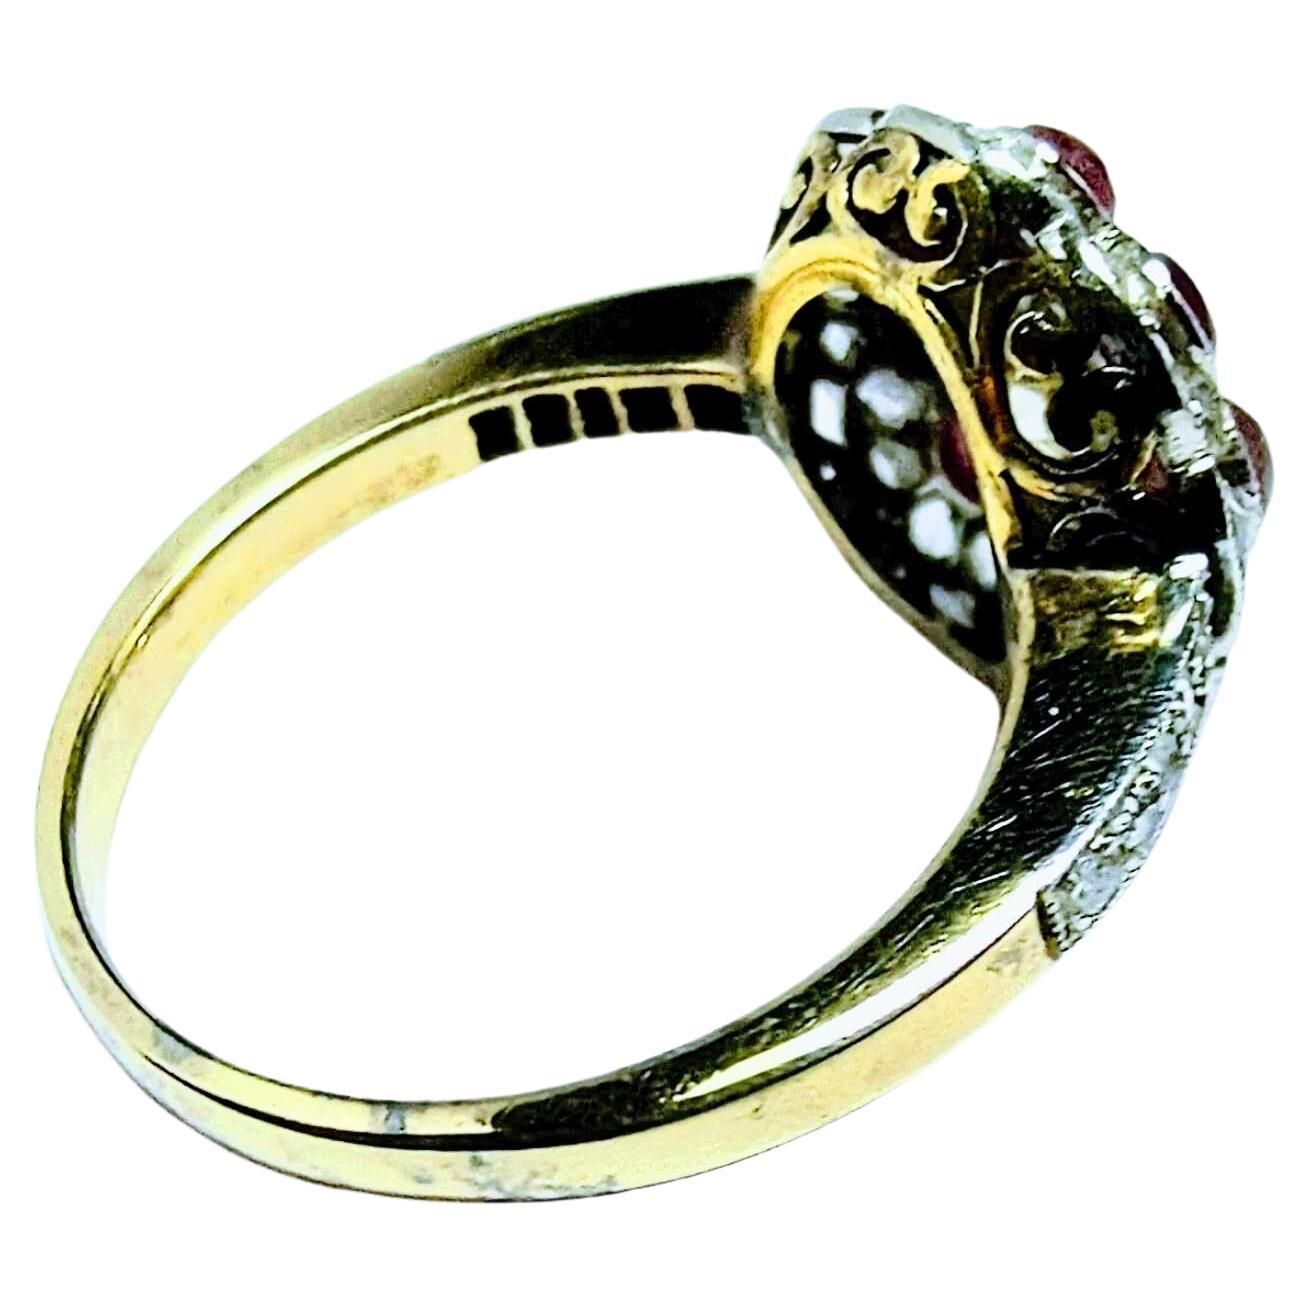 Vintage Art Deco Ring 1930s Briliant Cut Diamond 1 Carat Yellow Gold 18K Pt  For Sale 1